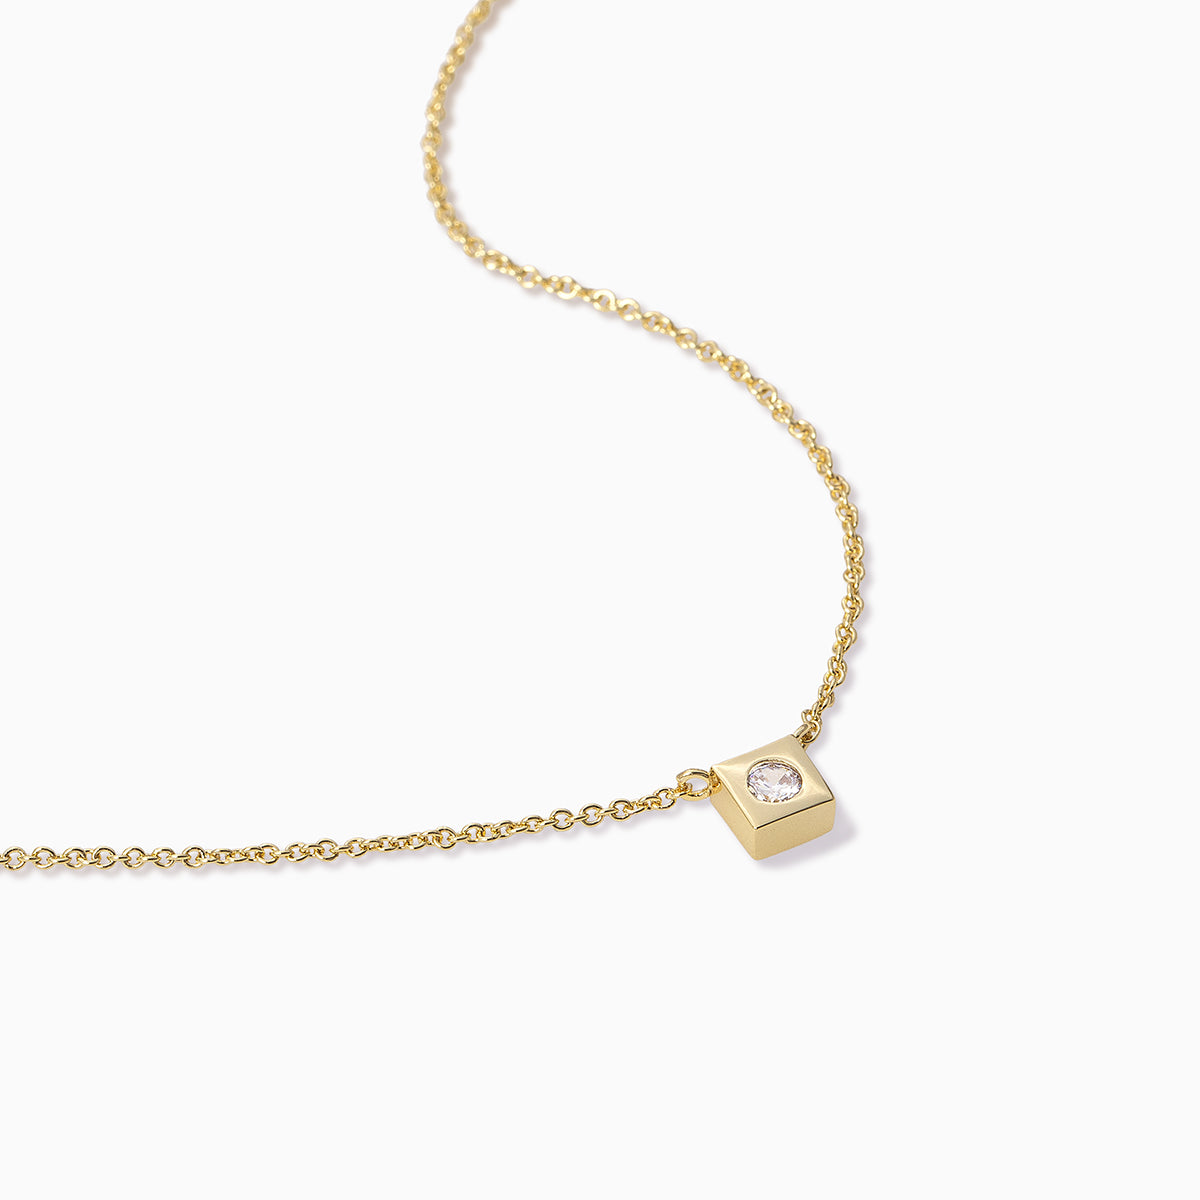 Uniform Necklace | Gold | Product Detail Image | Uncommon James